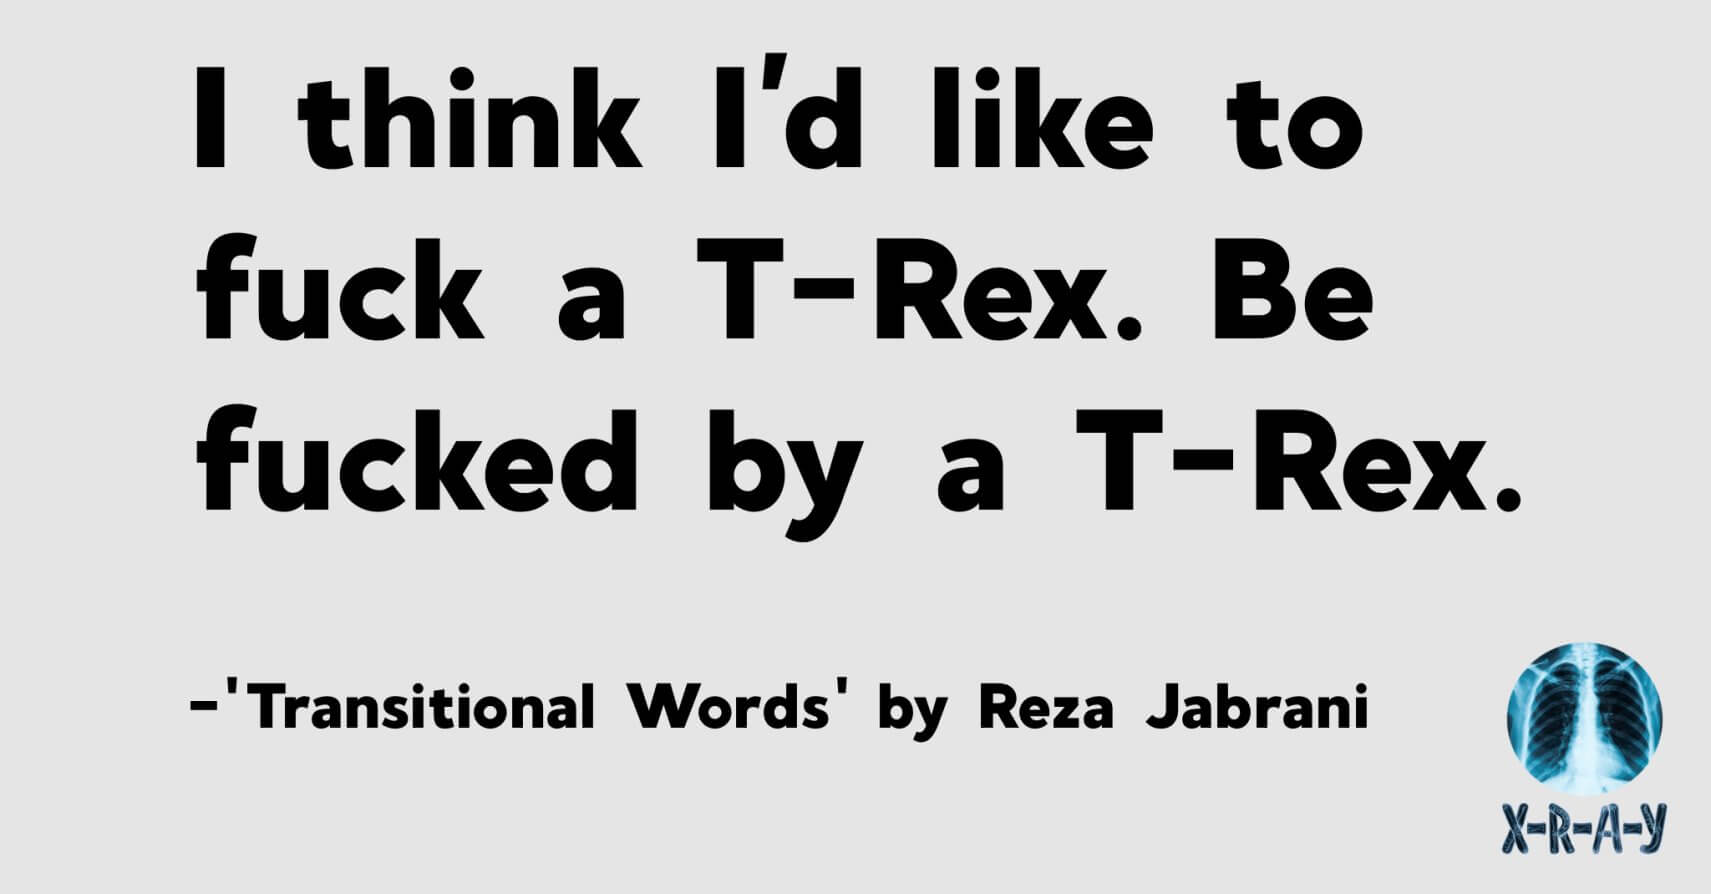 TRANSITIONAL WORDS by Reza Jabrani